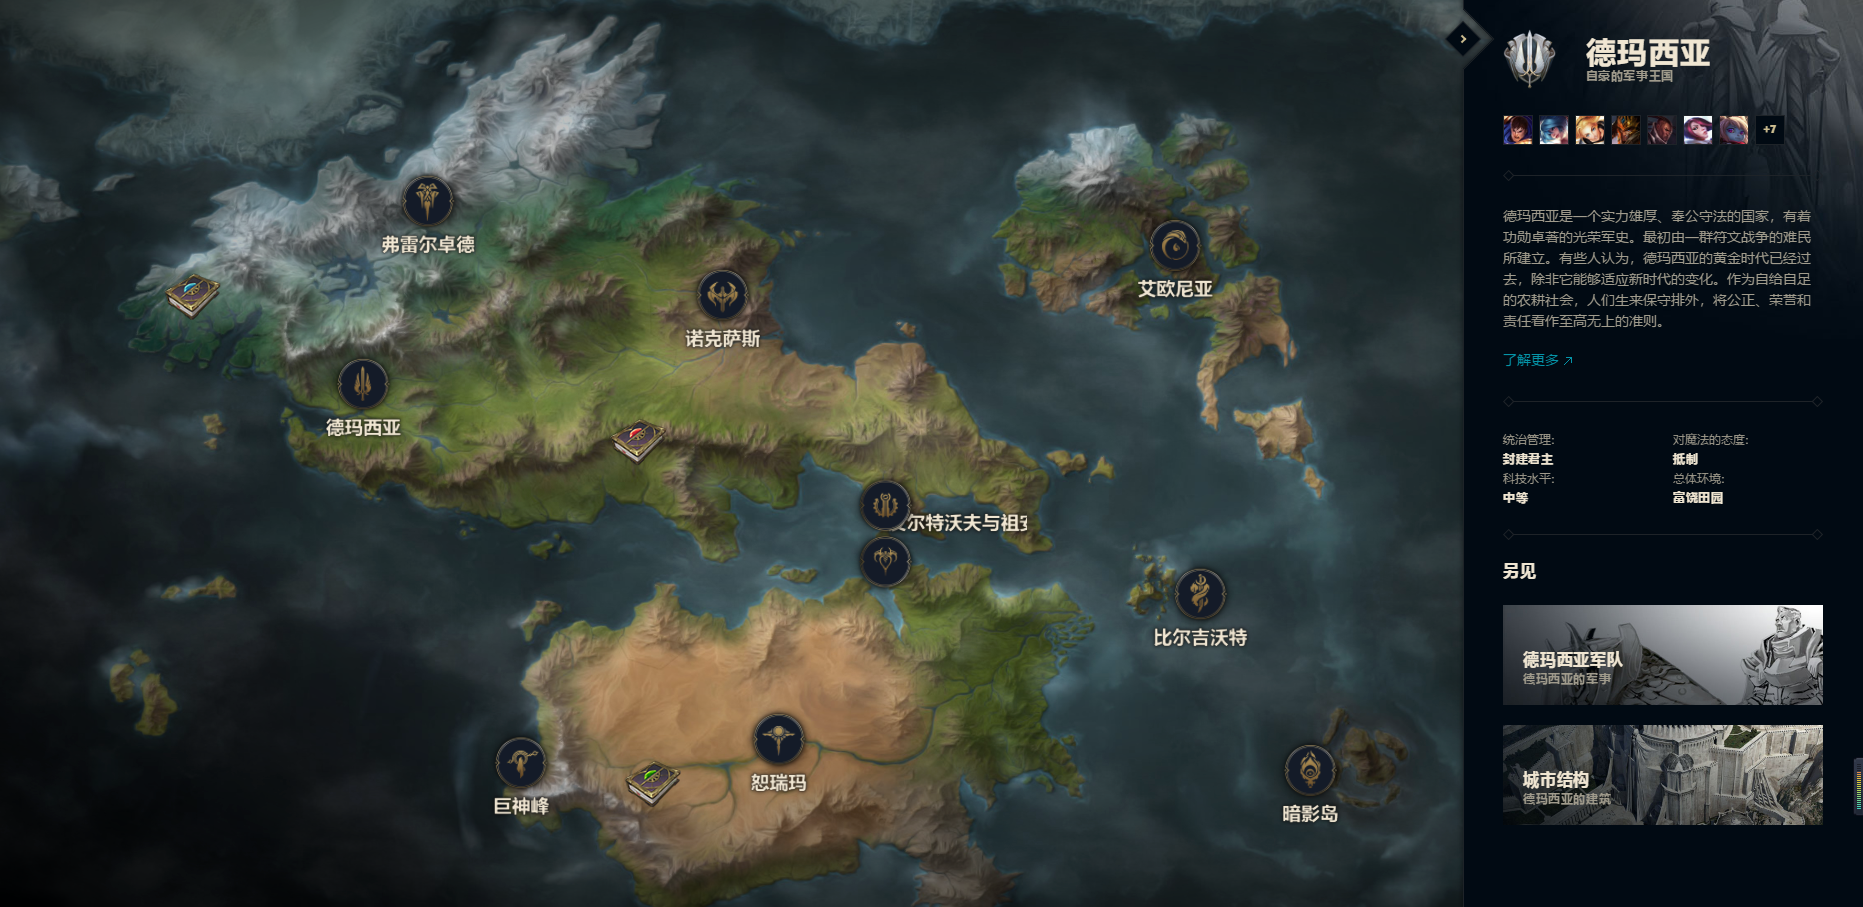 英雄联盟背景故事全面更新,符文之地——联盟世界的全景地图